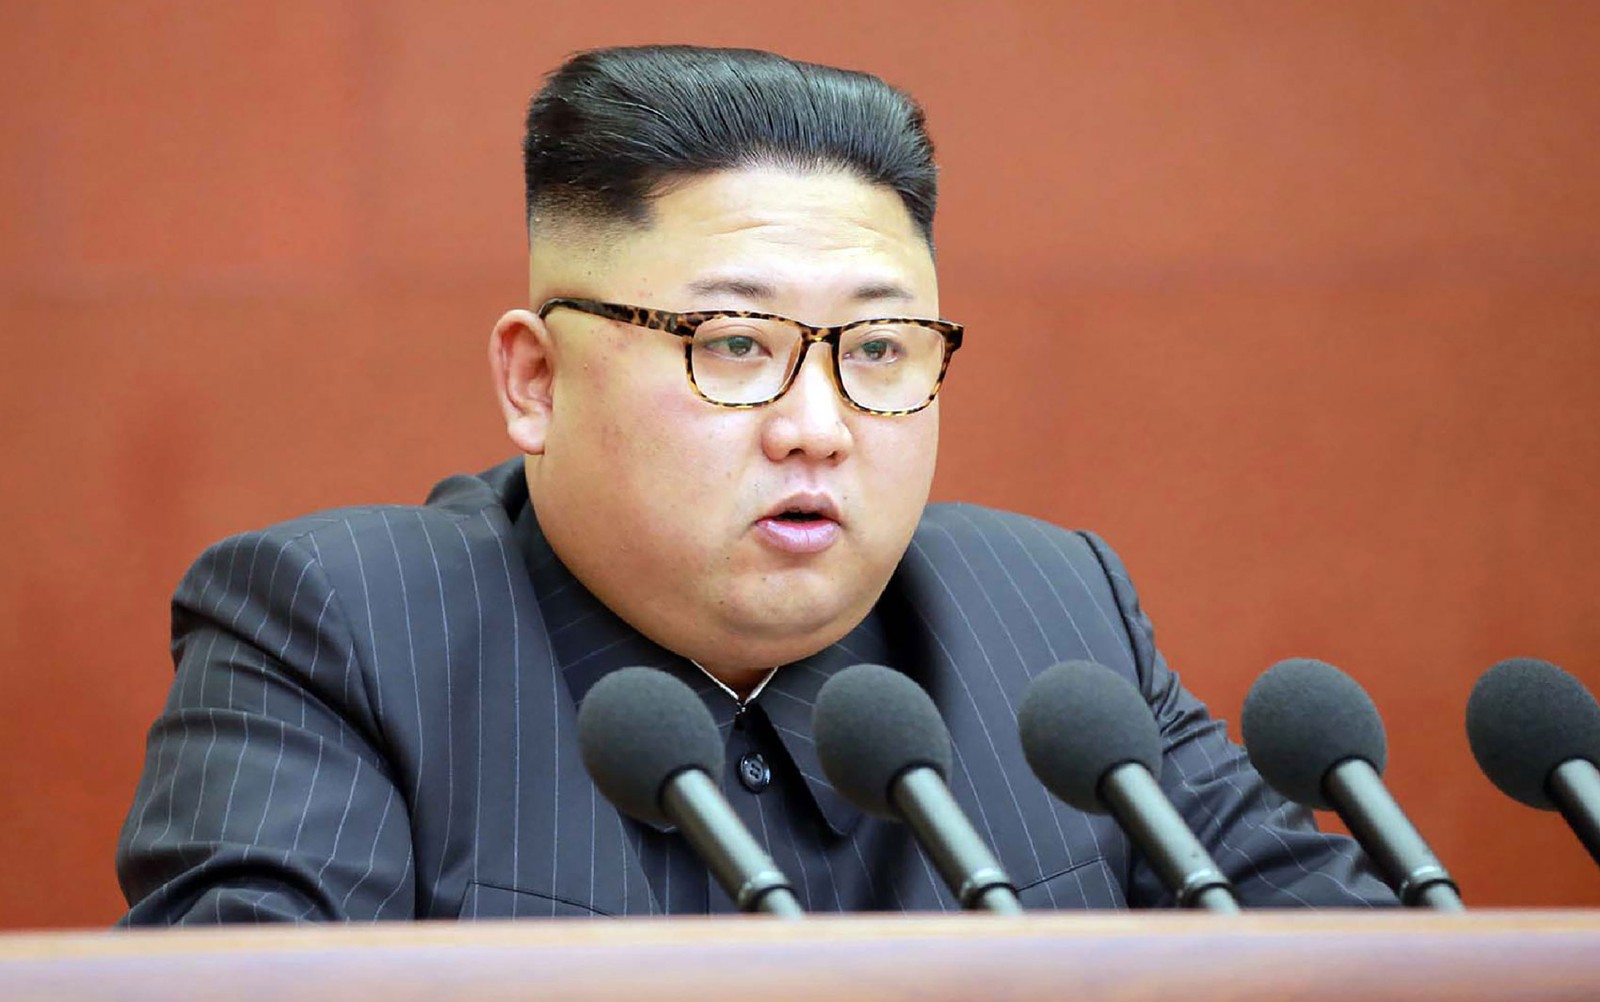 Advogado sul-coreano diz que mais de 200 GB de documentos militares foram roubados do país; hackers norte-coreanos confirmam, mas Pyongyang nega (Foto: STR/KCNA via KNS/AFP)